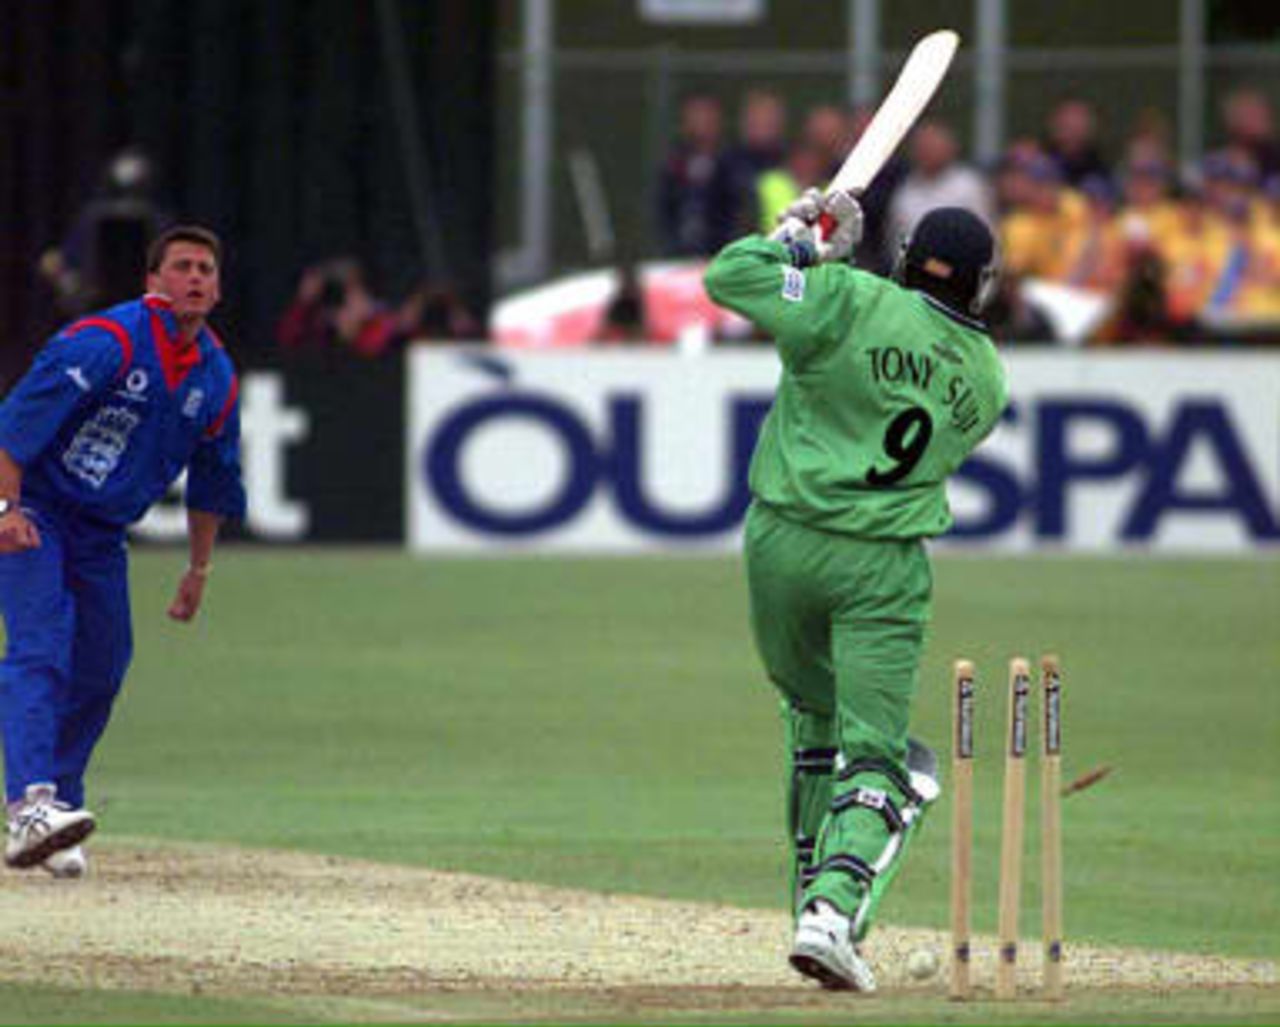 Darren Gough bowls Tony Suji  - England v Kenya at Canterbury, World Cup Group A, match 2, May 18 1999